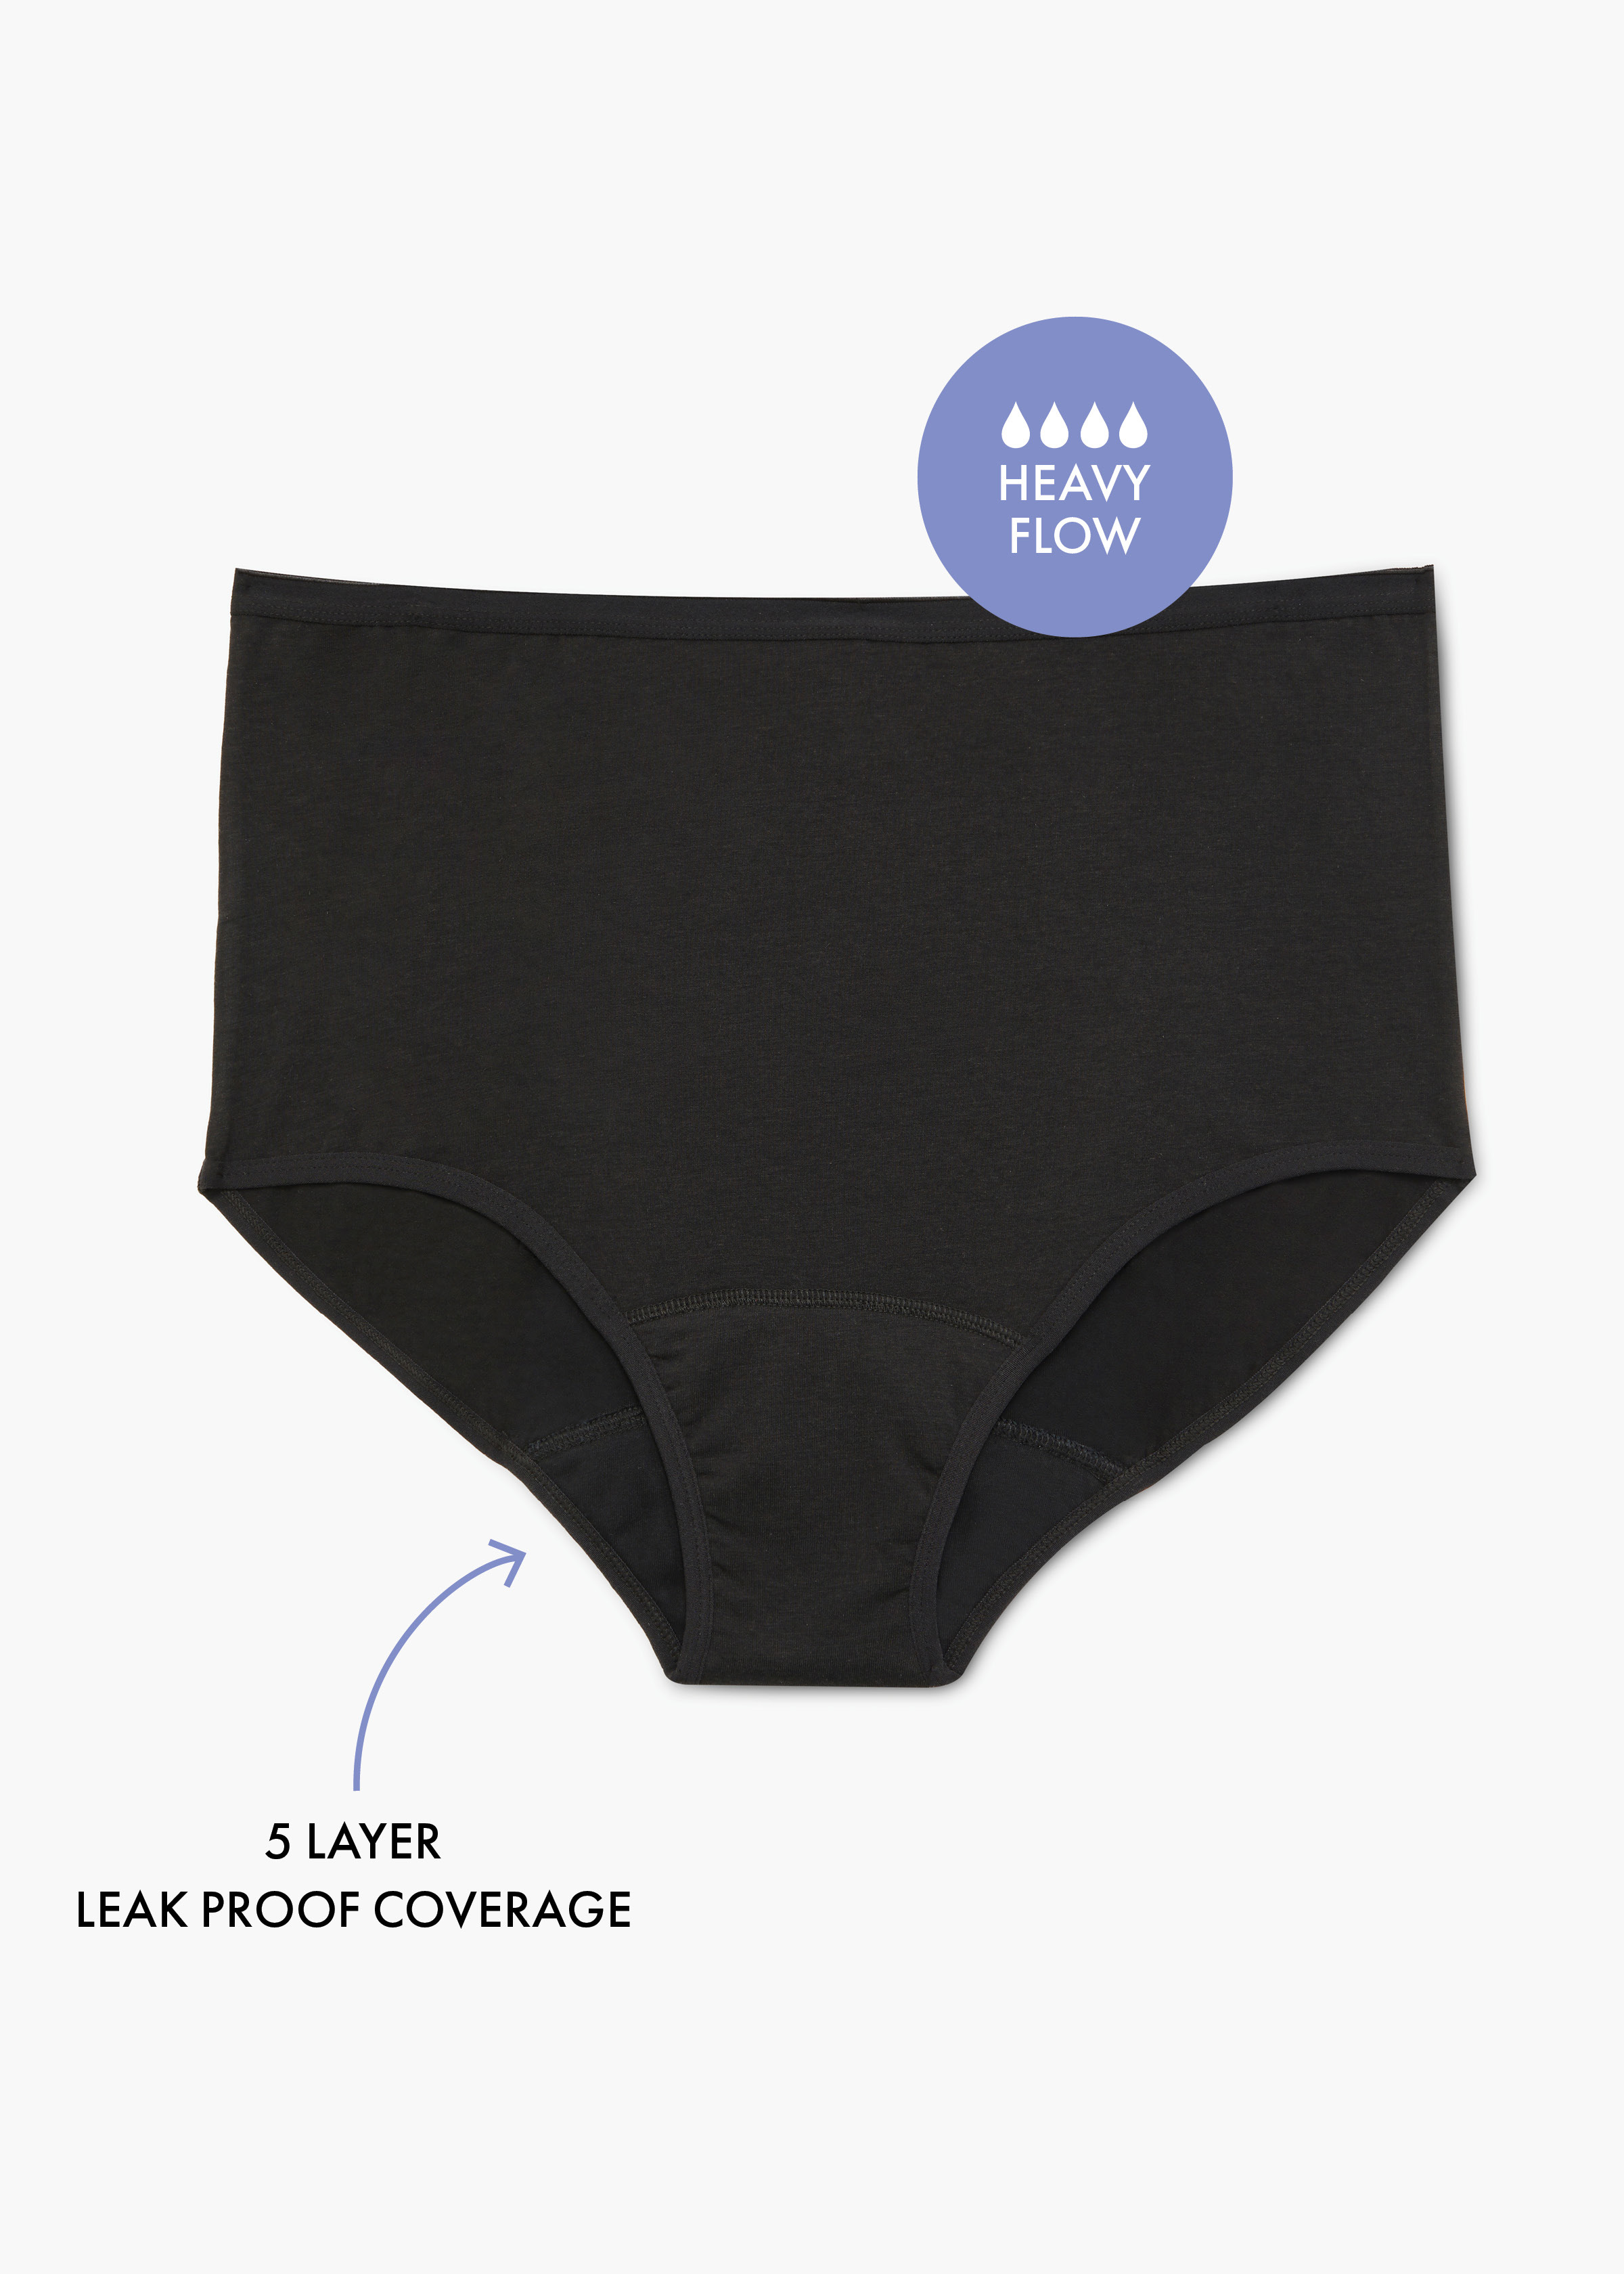 Moderate-Heavy Absorbency  Period & Leak-Proof Underwear